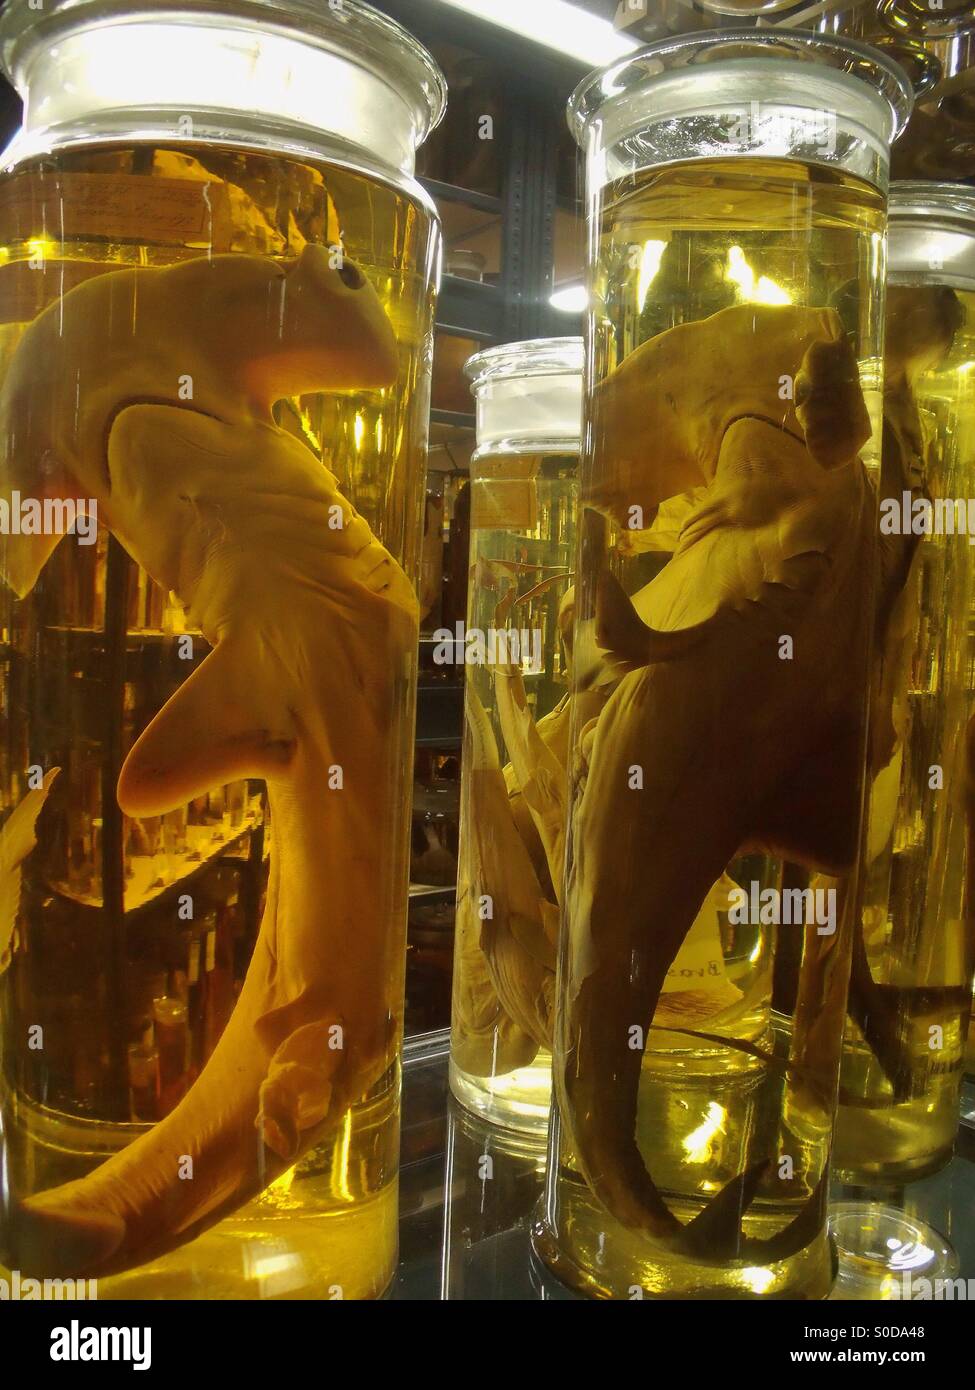 Varie specie di squali sono conservati in bottiglie riempite con alcool. Foto Stock